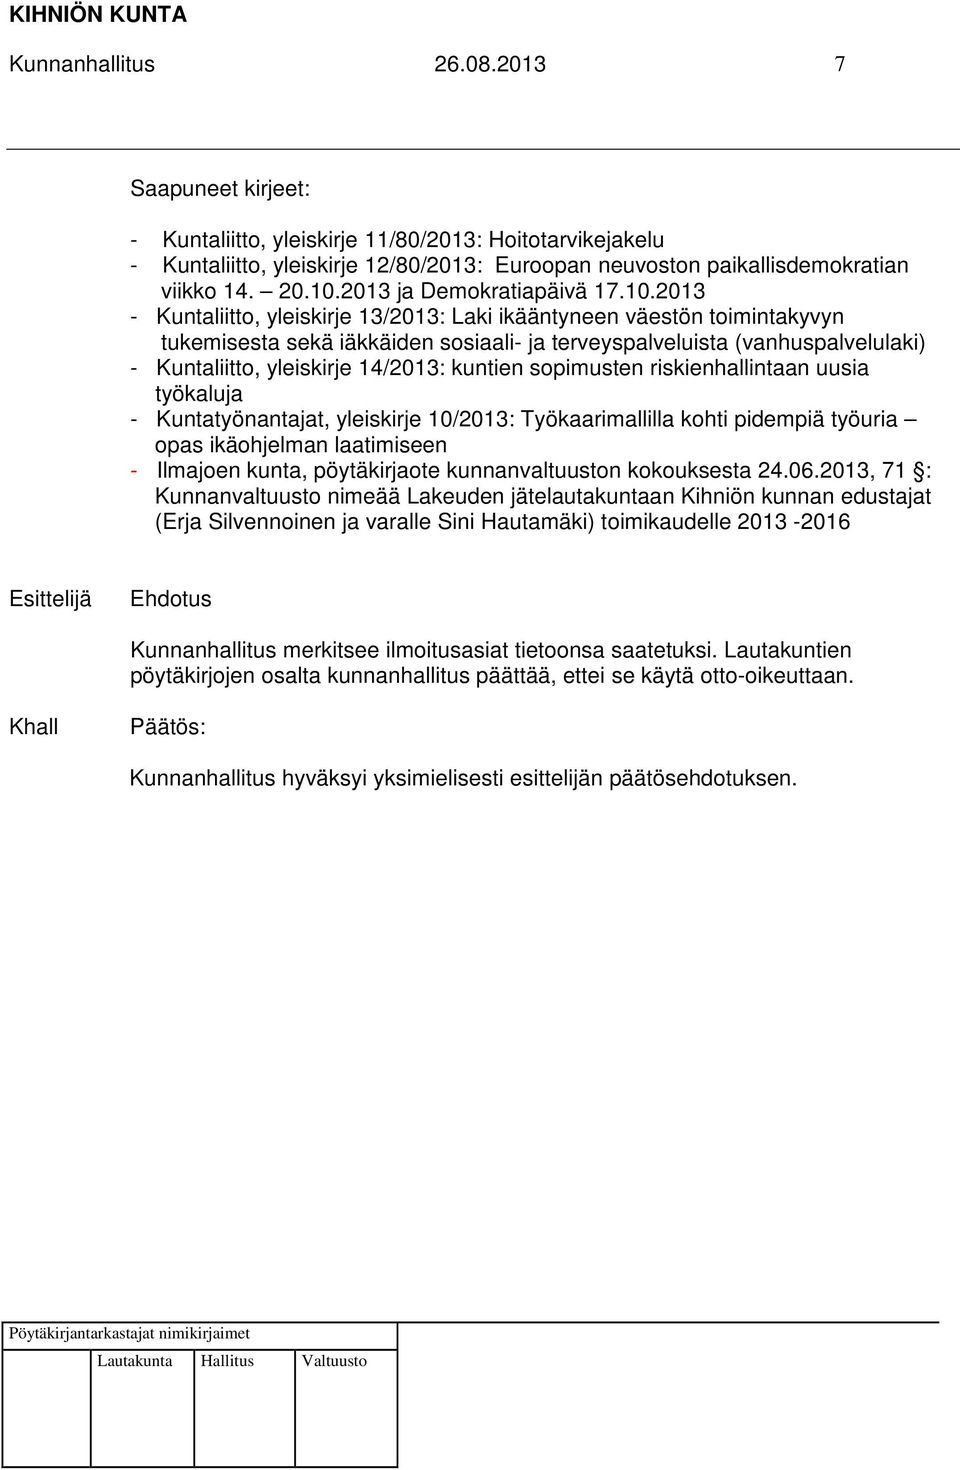 2013 - Kuntaliitto, yleiskirje 13/2013: Laki ikääntyneen väestön toimintakyvyn tukemisesta sekä iäkkäiden sosiaali- ja terveyspalveluista (vanhuspalvelulaki) - Kuntaliitto, yleiskirje 14/2013: